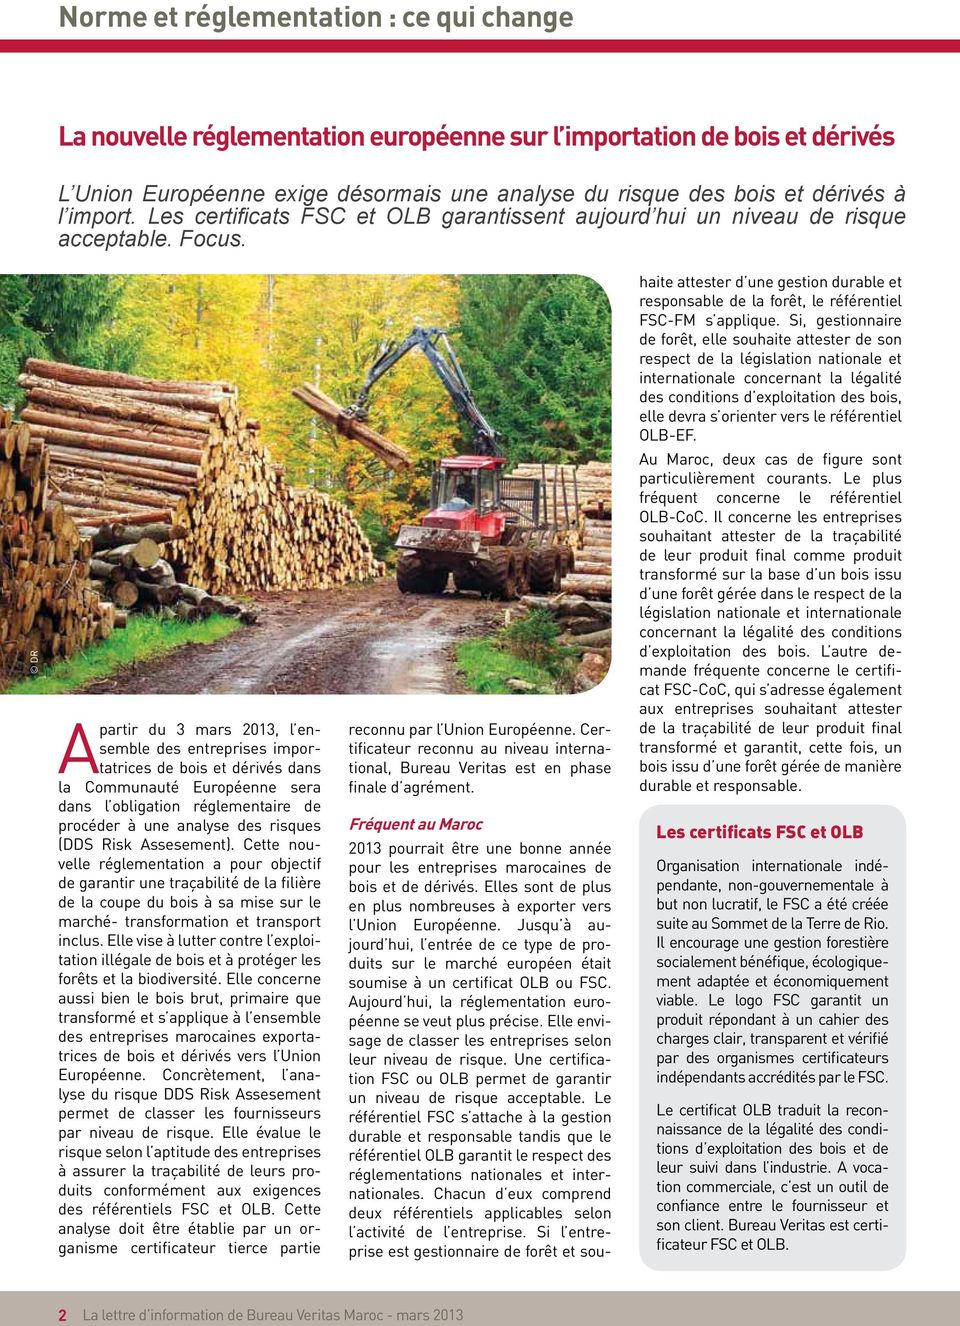 Si, gestionnaire de forêt, elle souhaite attester de son respect de la législation nationale et internationale concernant la légalité des conditions d exploitation des bois, elle devra s orienter